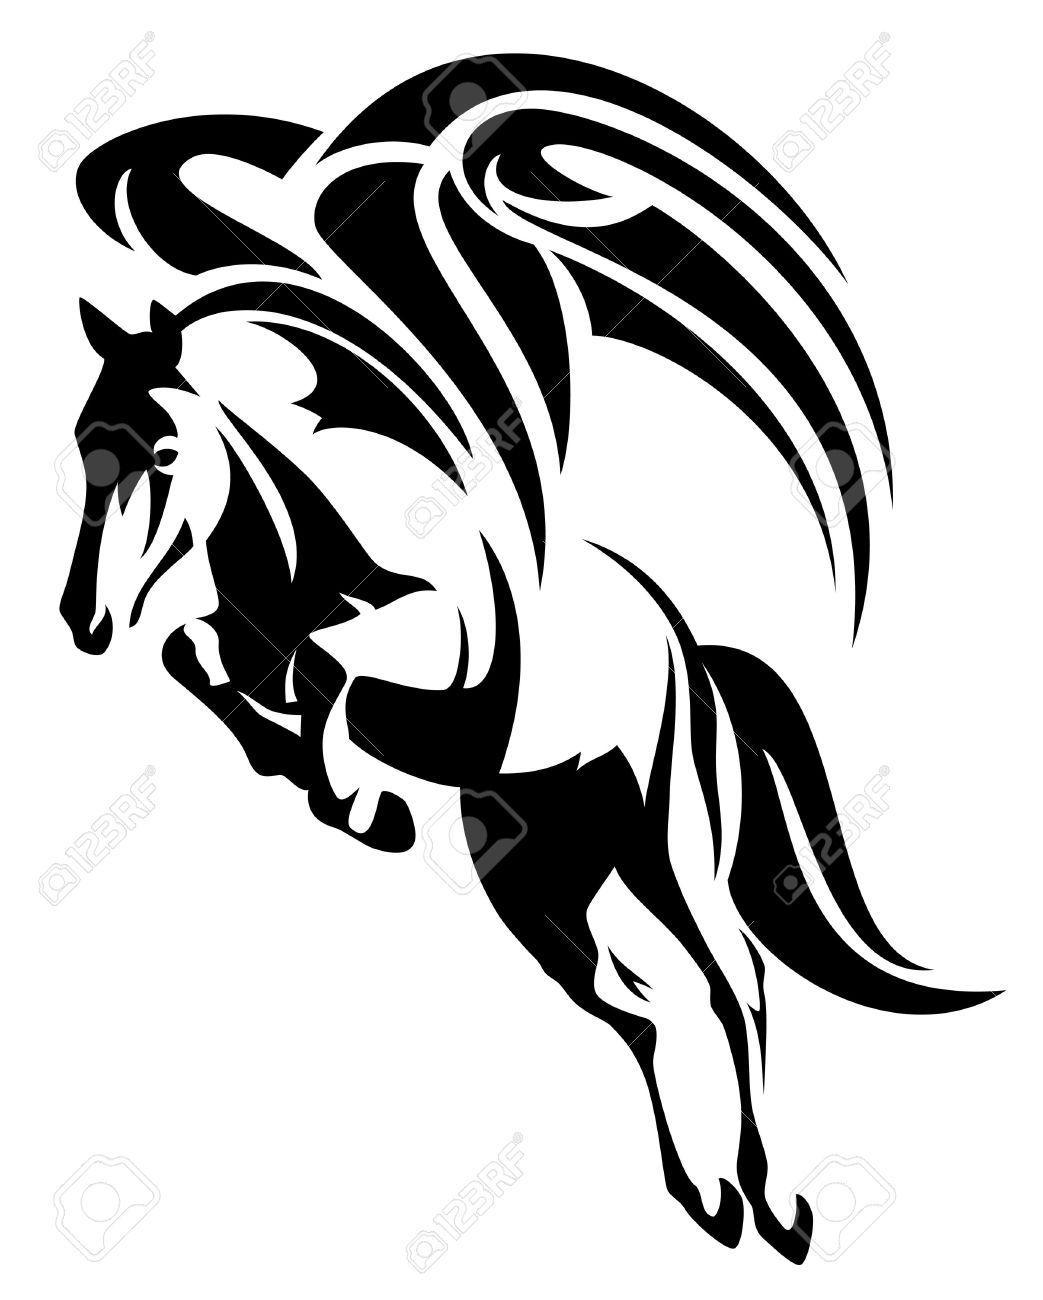 Black Winged Horse Logo - Tattoo. Tattoos, Art, Tattoo designs